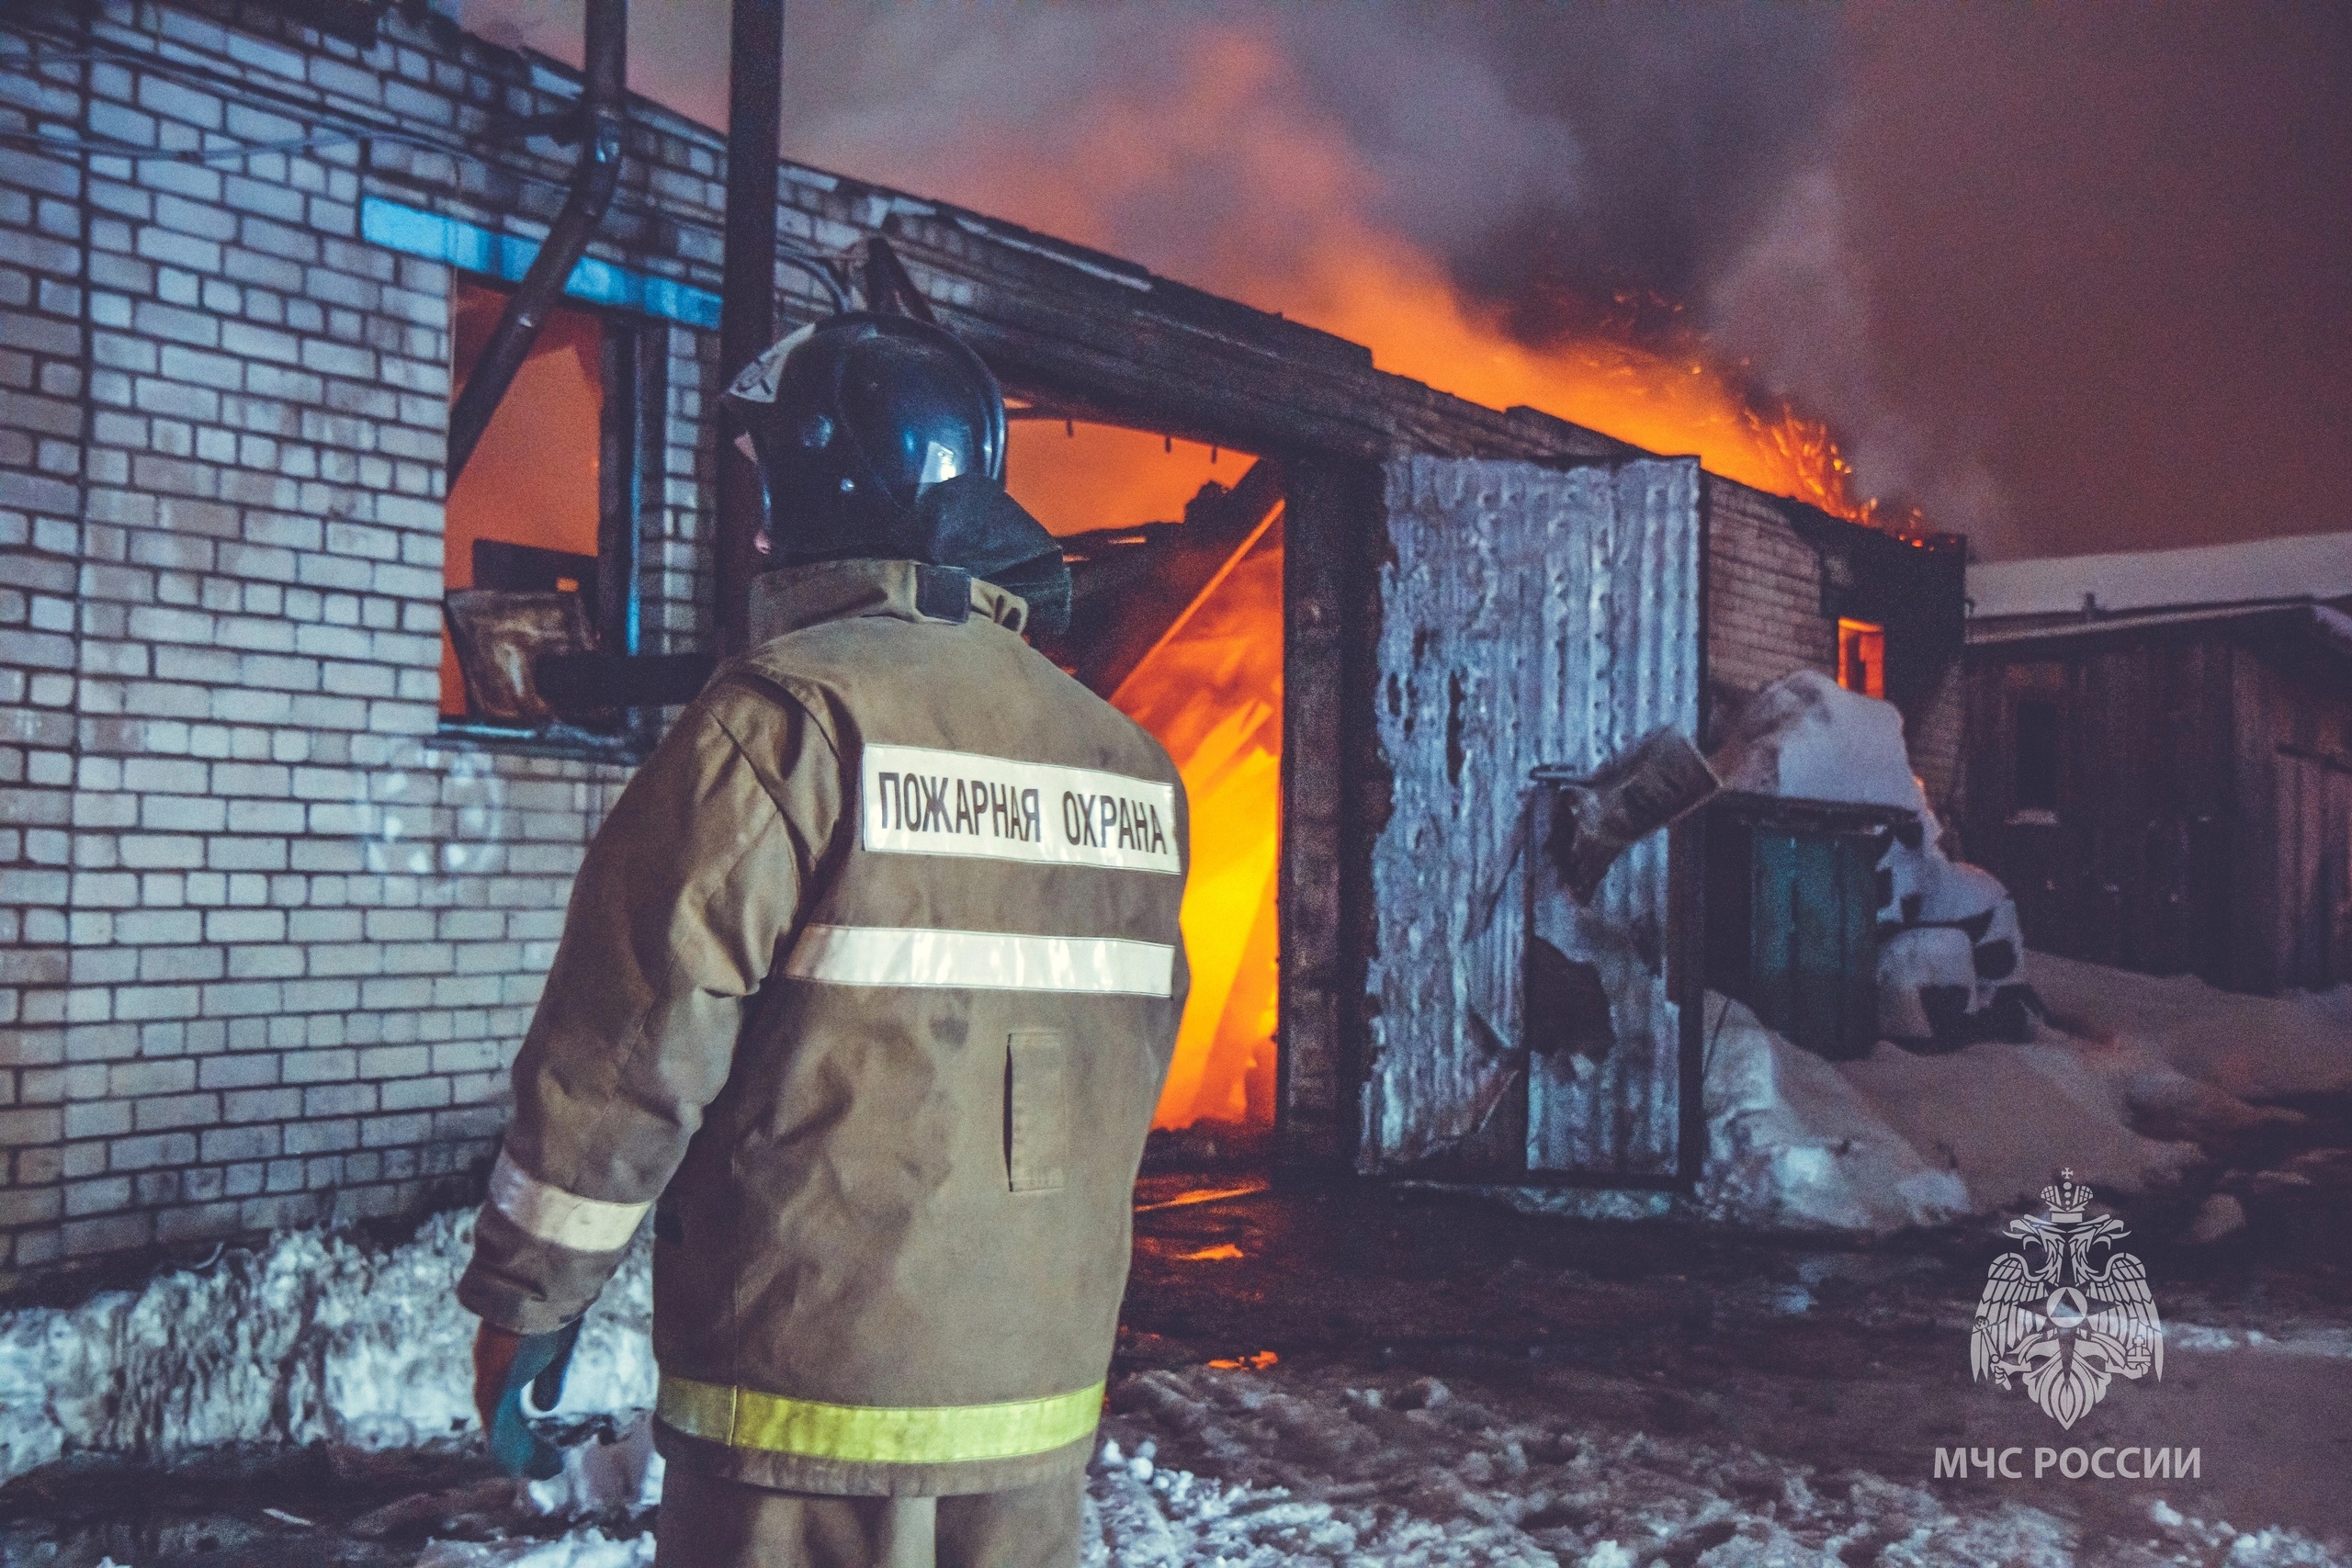 3294 пожара произошло в Смоленской области с начала года